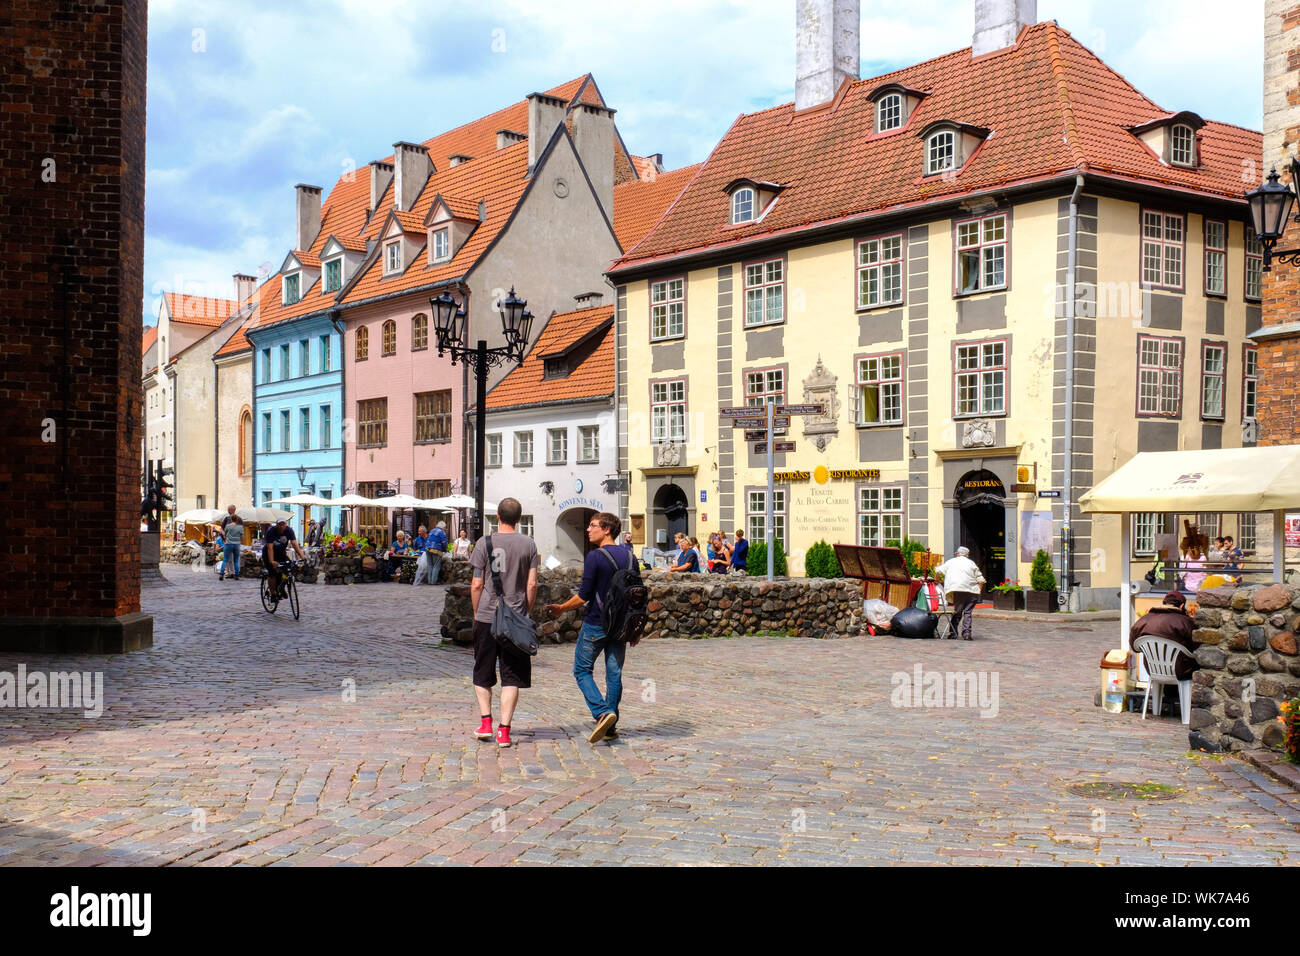 Lettland: Riga. Passanten und Touristen in den gepflasterten Straßen der Altstadt mit seinen traditionellen Häusern und bunten Fassaden Stockfoto